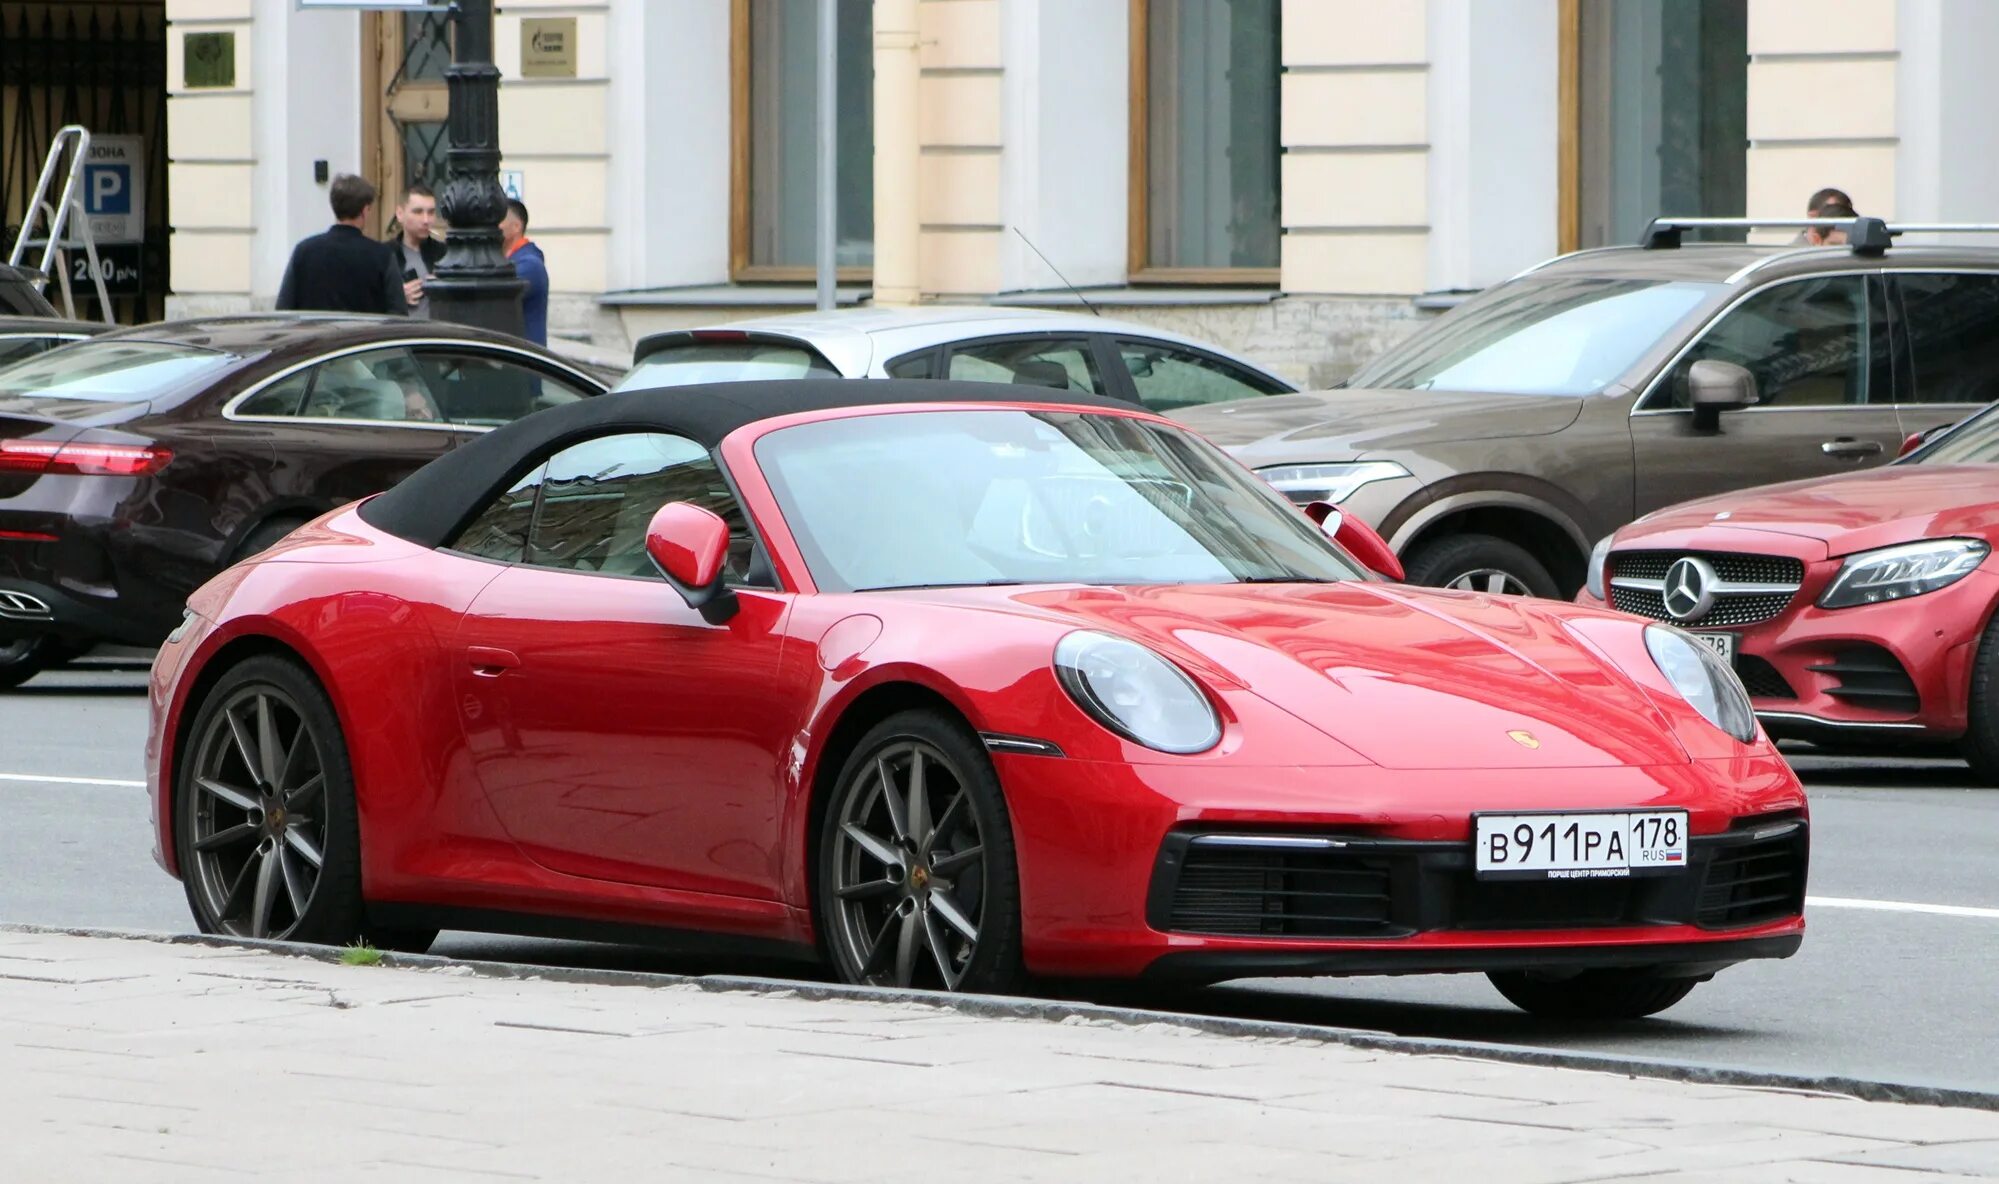 Porsche 911 196. Porsche 911 в Москве. Porsche 911 в России. Порше 911 199.